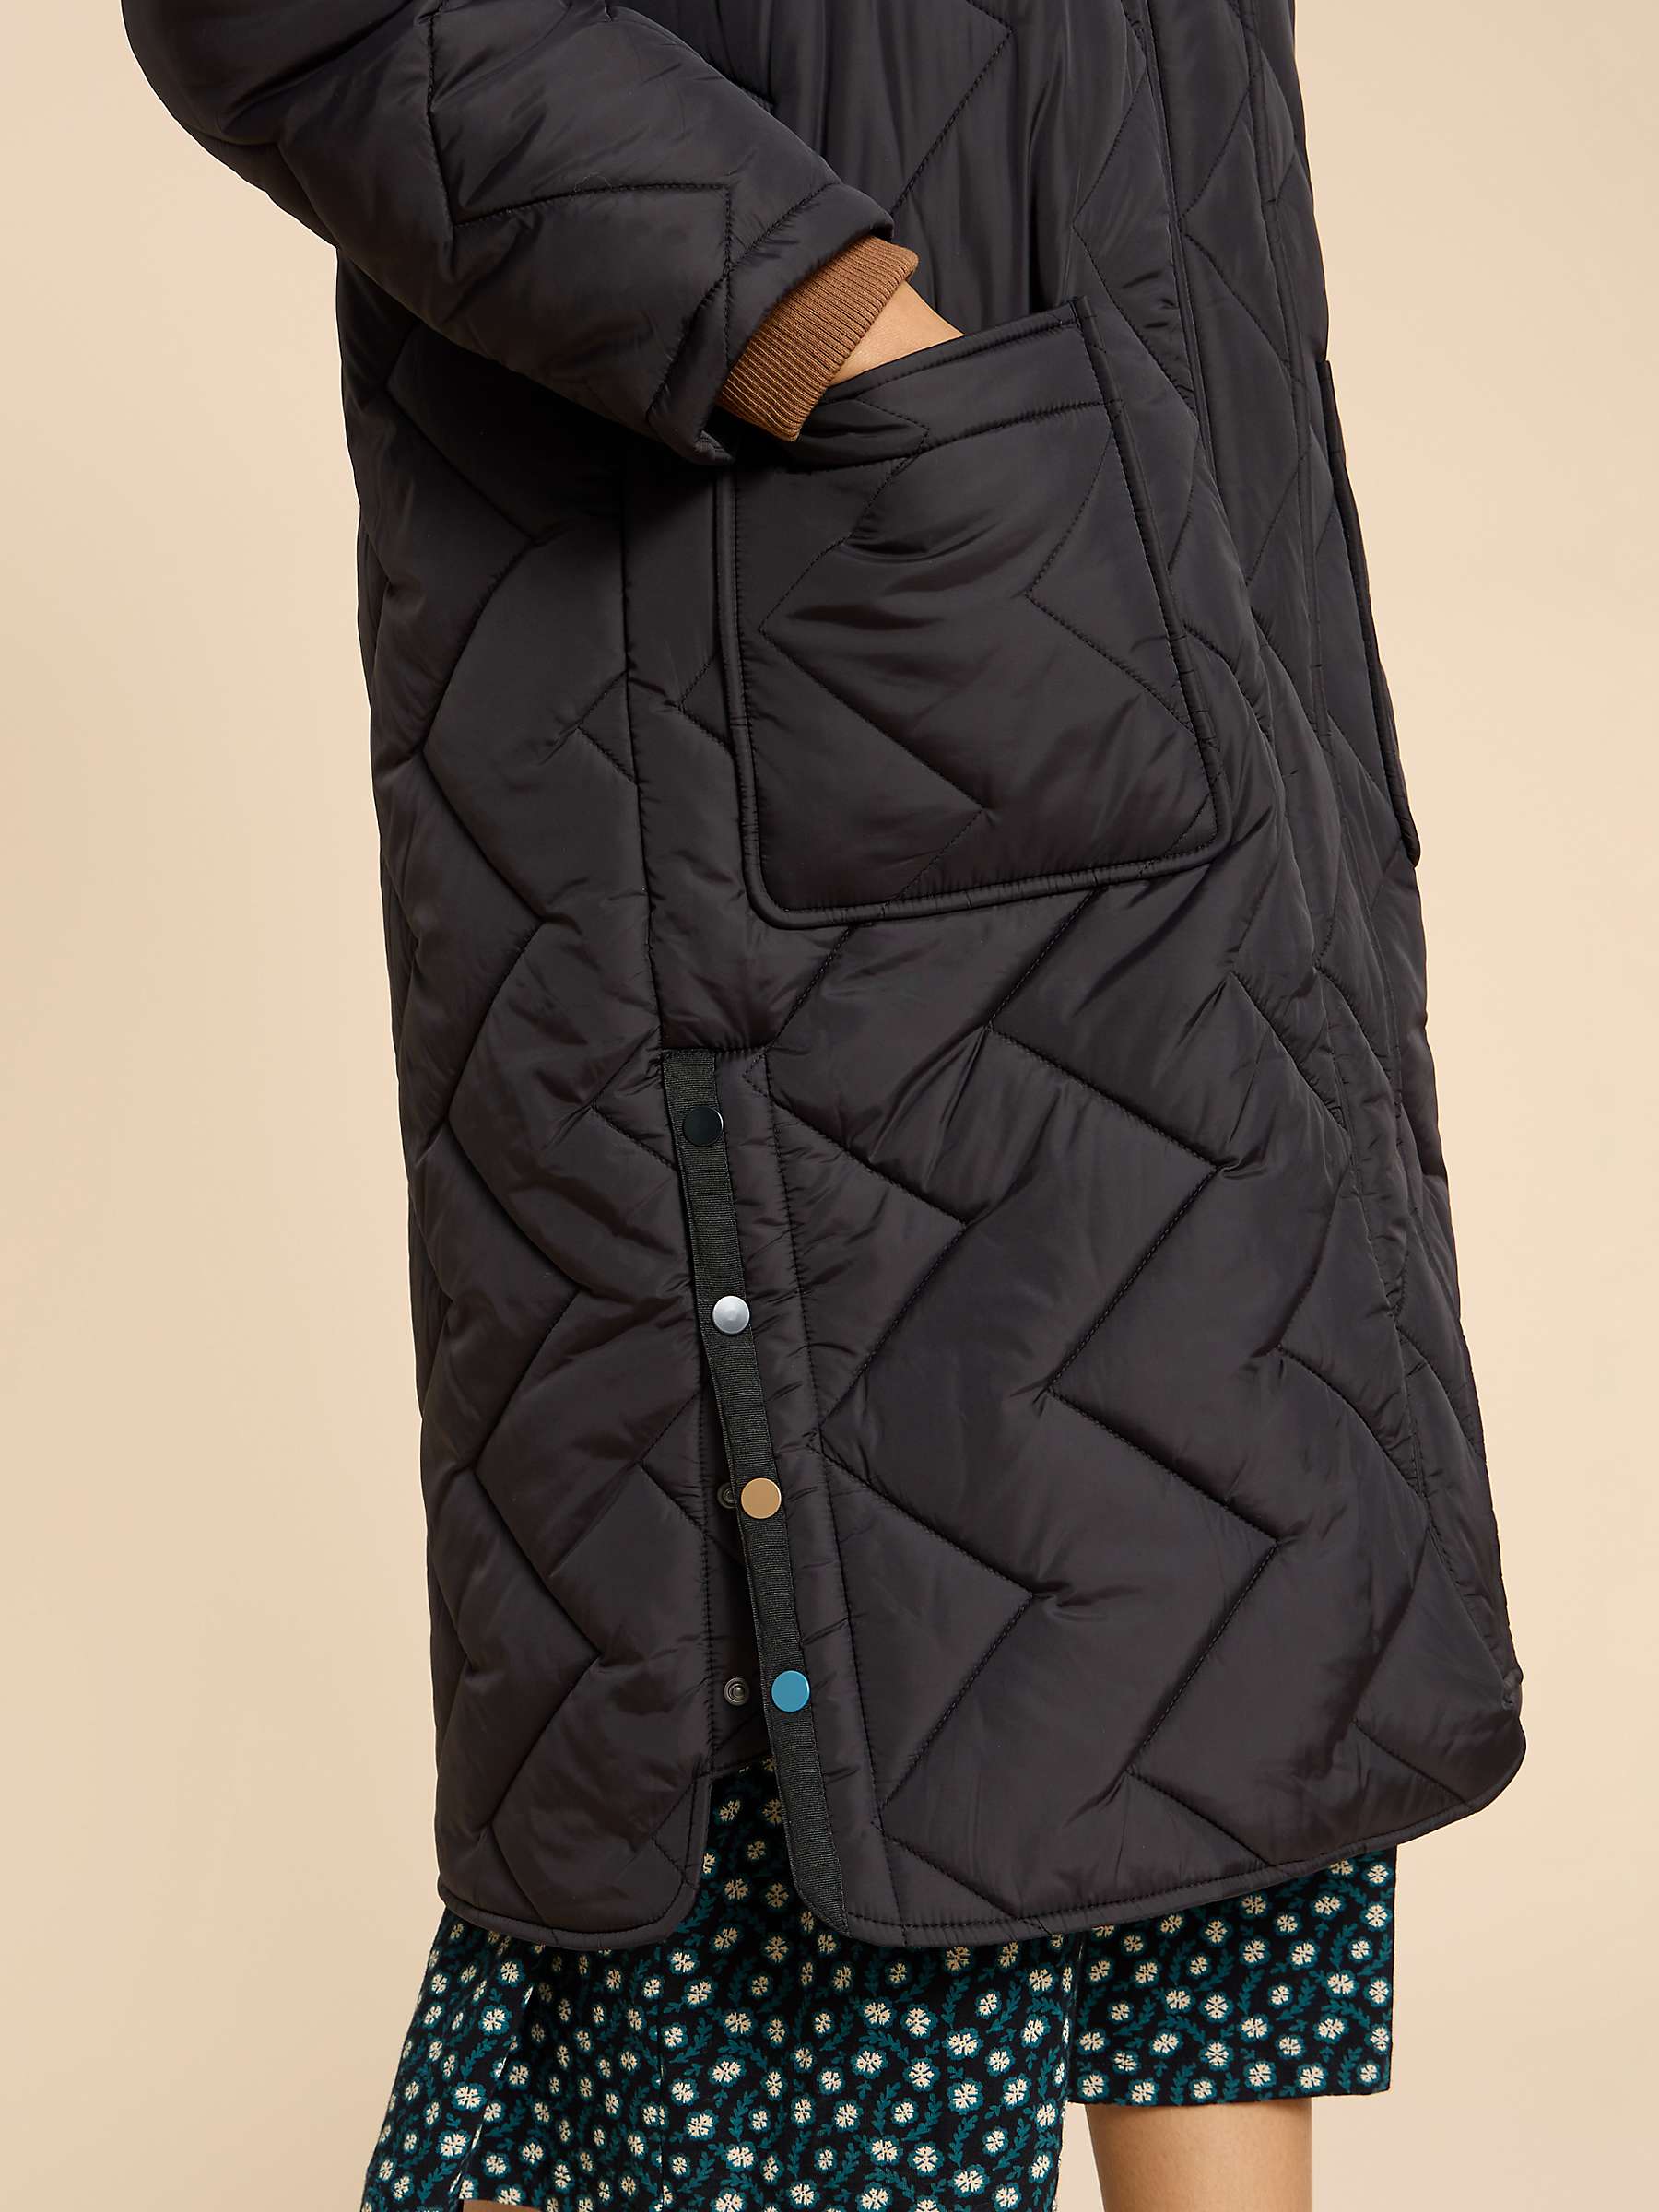 Buy White Stuff Sloane Padded Hooded Longline Coat, Black Online at johnlewis.com